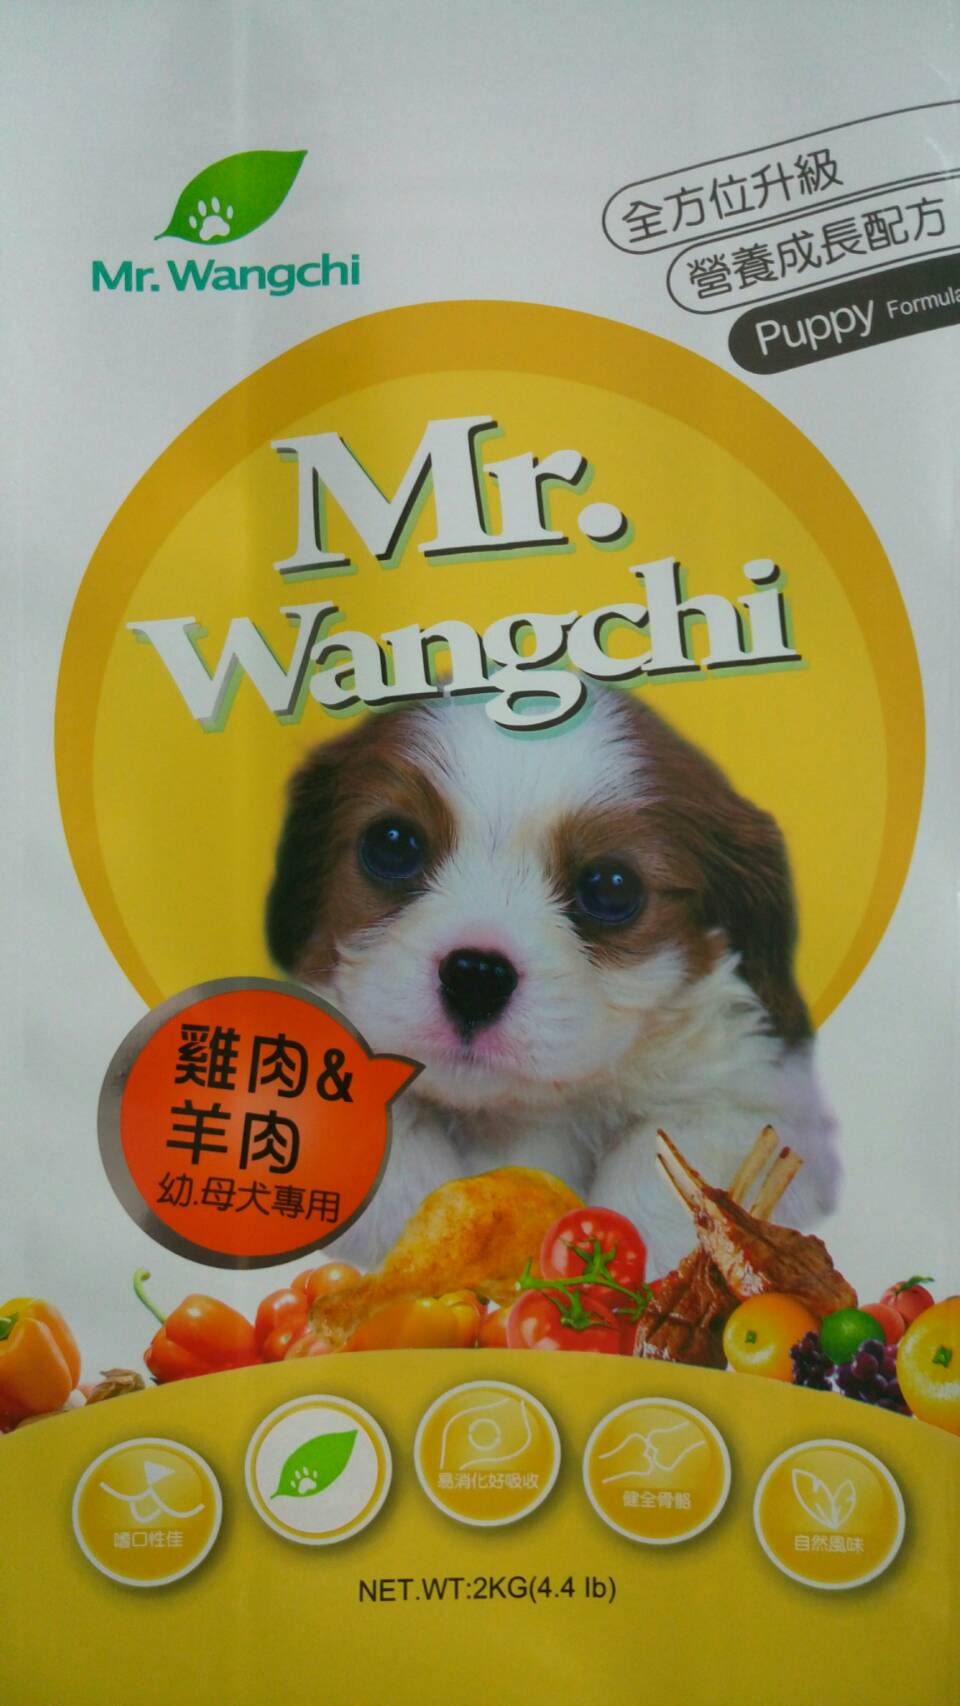 旺奇先生:雞肉&羊肉幼母犬專用
Mr.Wangchi